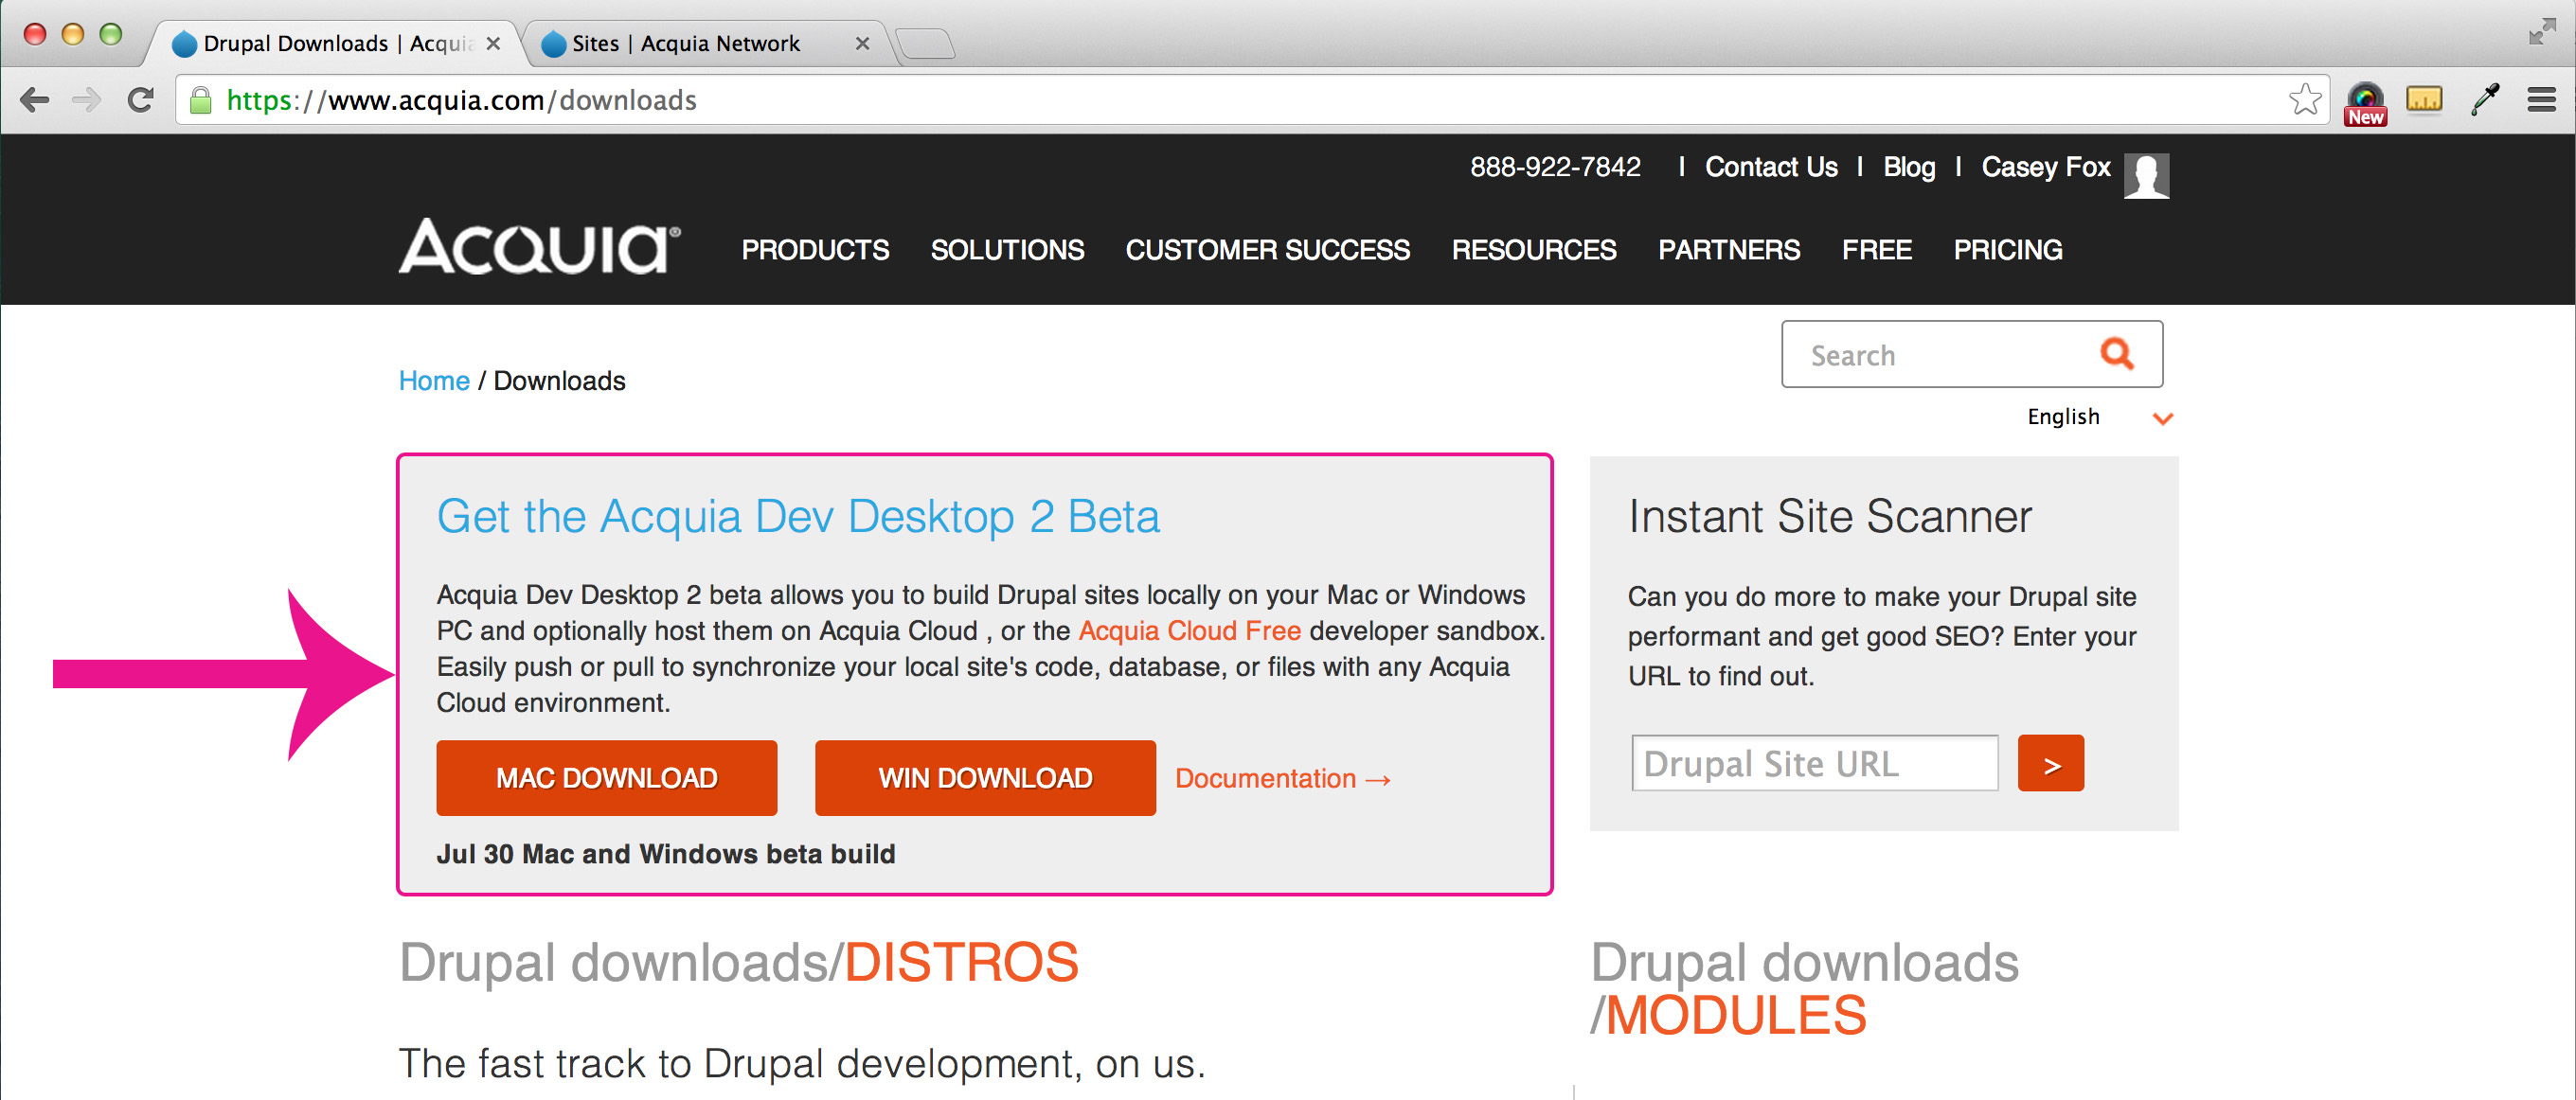 Acquia Dev Desktop 2 Beta